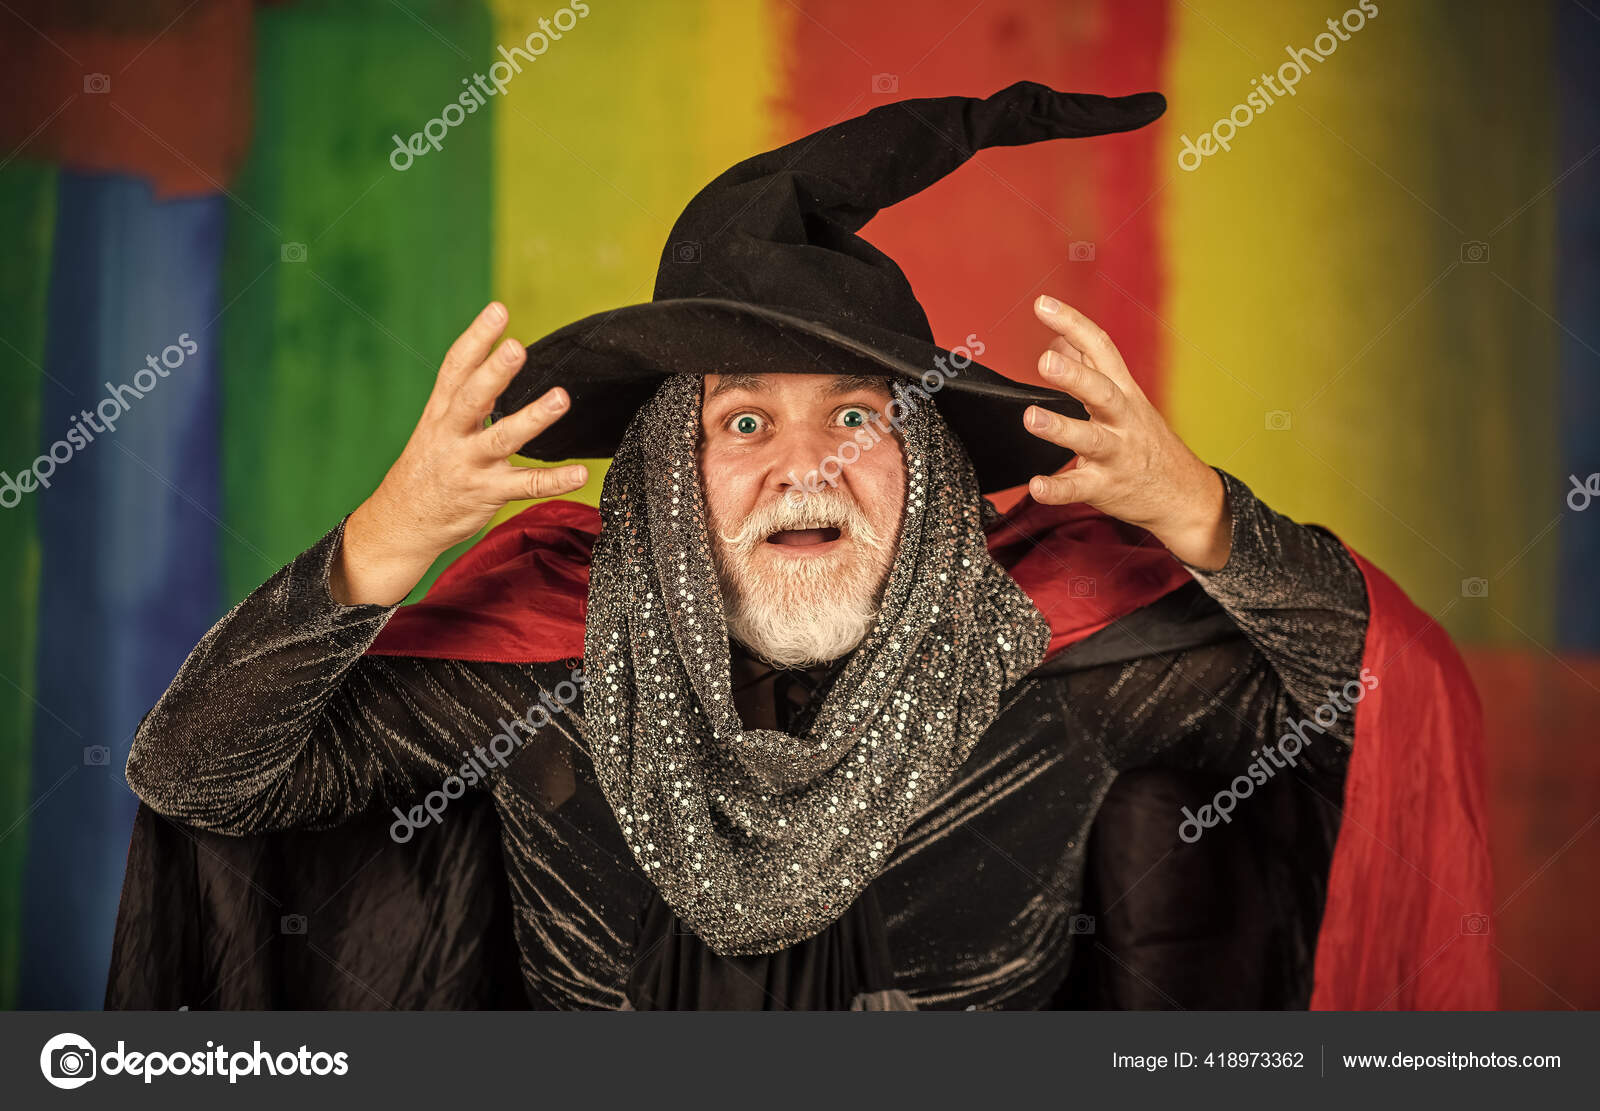 Sentindo medo. 31 de outubro. homem gótico com fantasia de halloween. homem  sênior segura abóbora. velho com capa e chapéu mágico. jack-o-lantern.  terror de fantasia de halloween. decoração de halloween e conceito